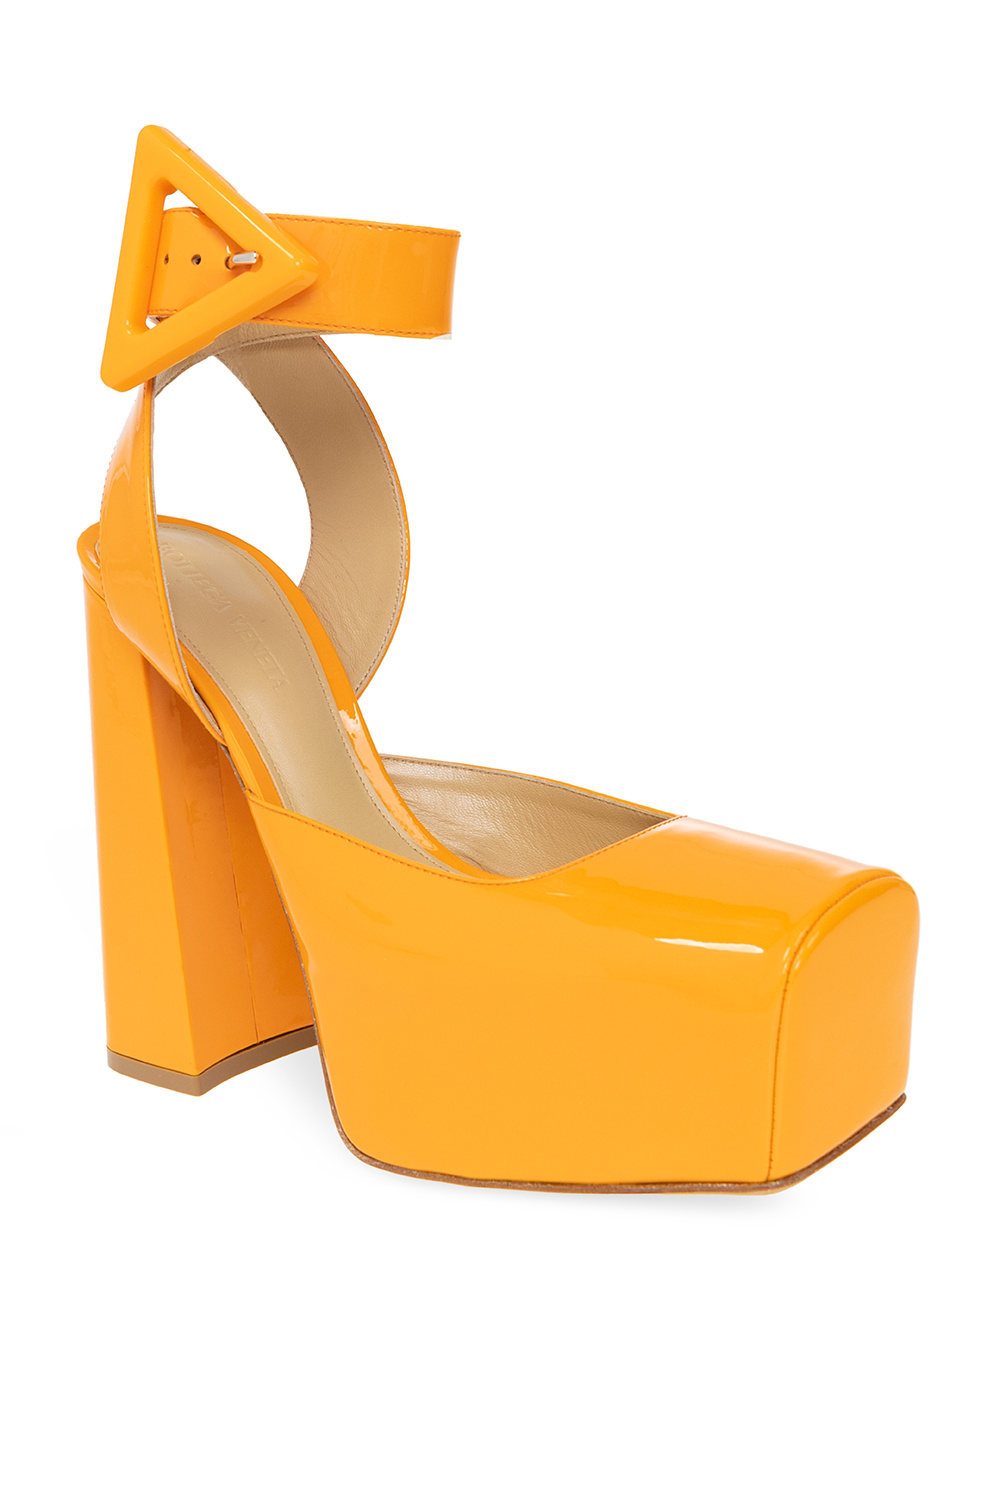 Bottega Veneta ‘Tower’ platform EVA shoes